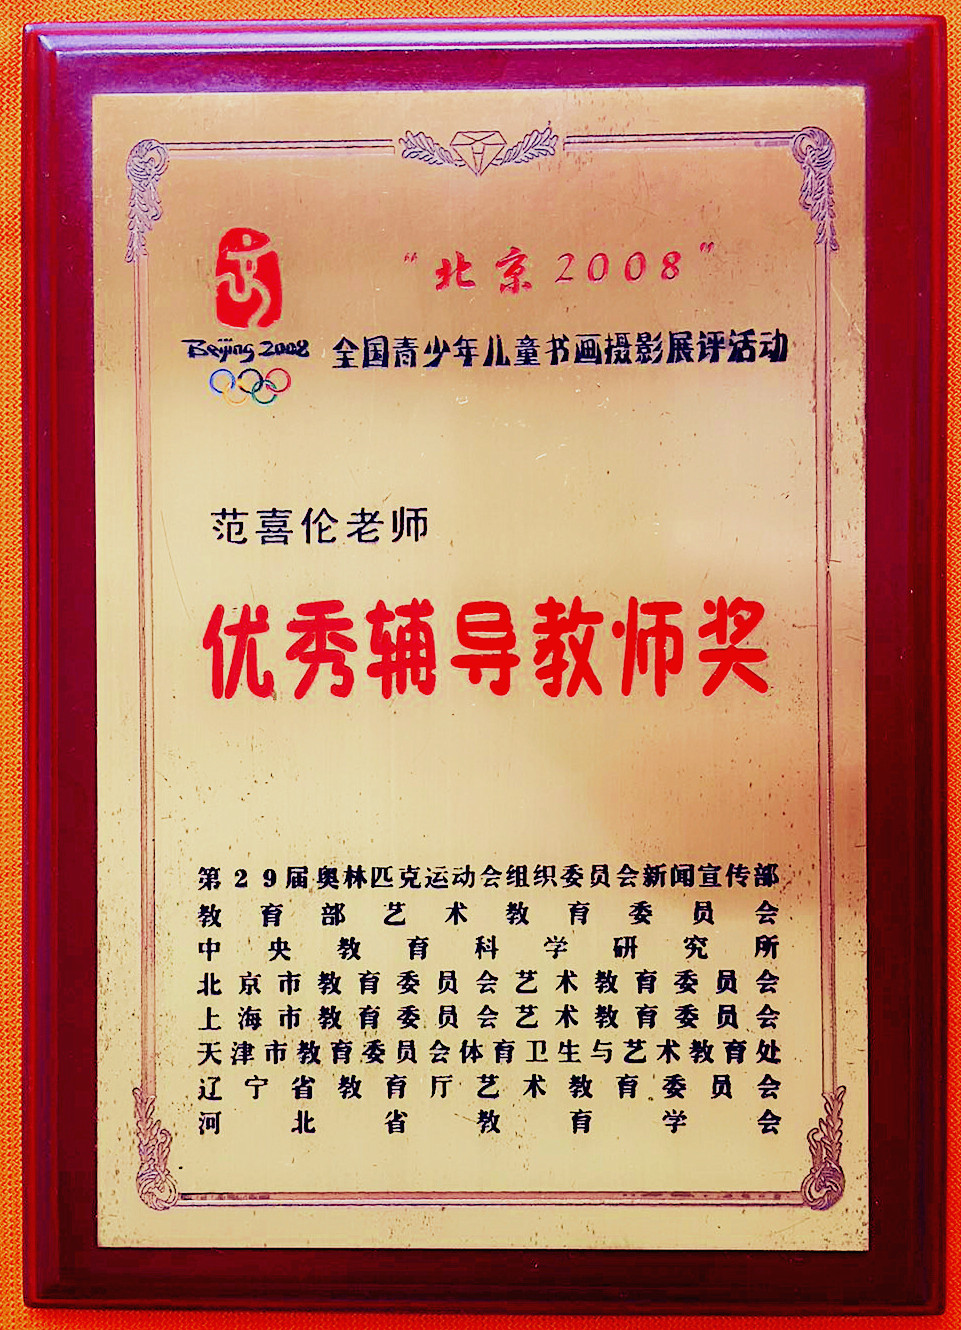 范喜倫榮獲優秀輔導教師獎證書